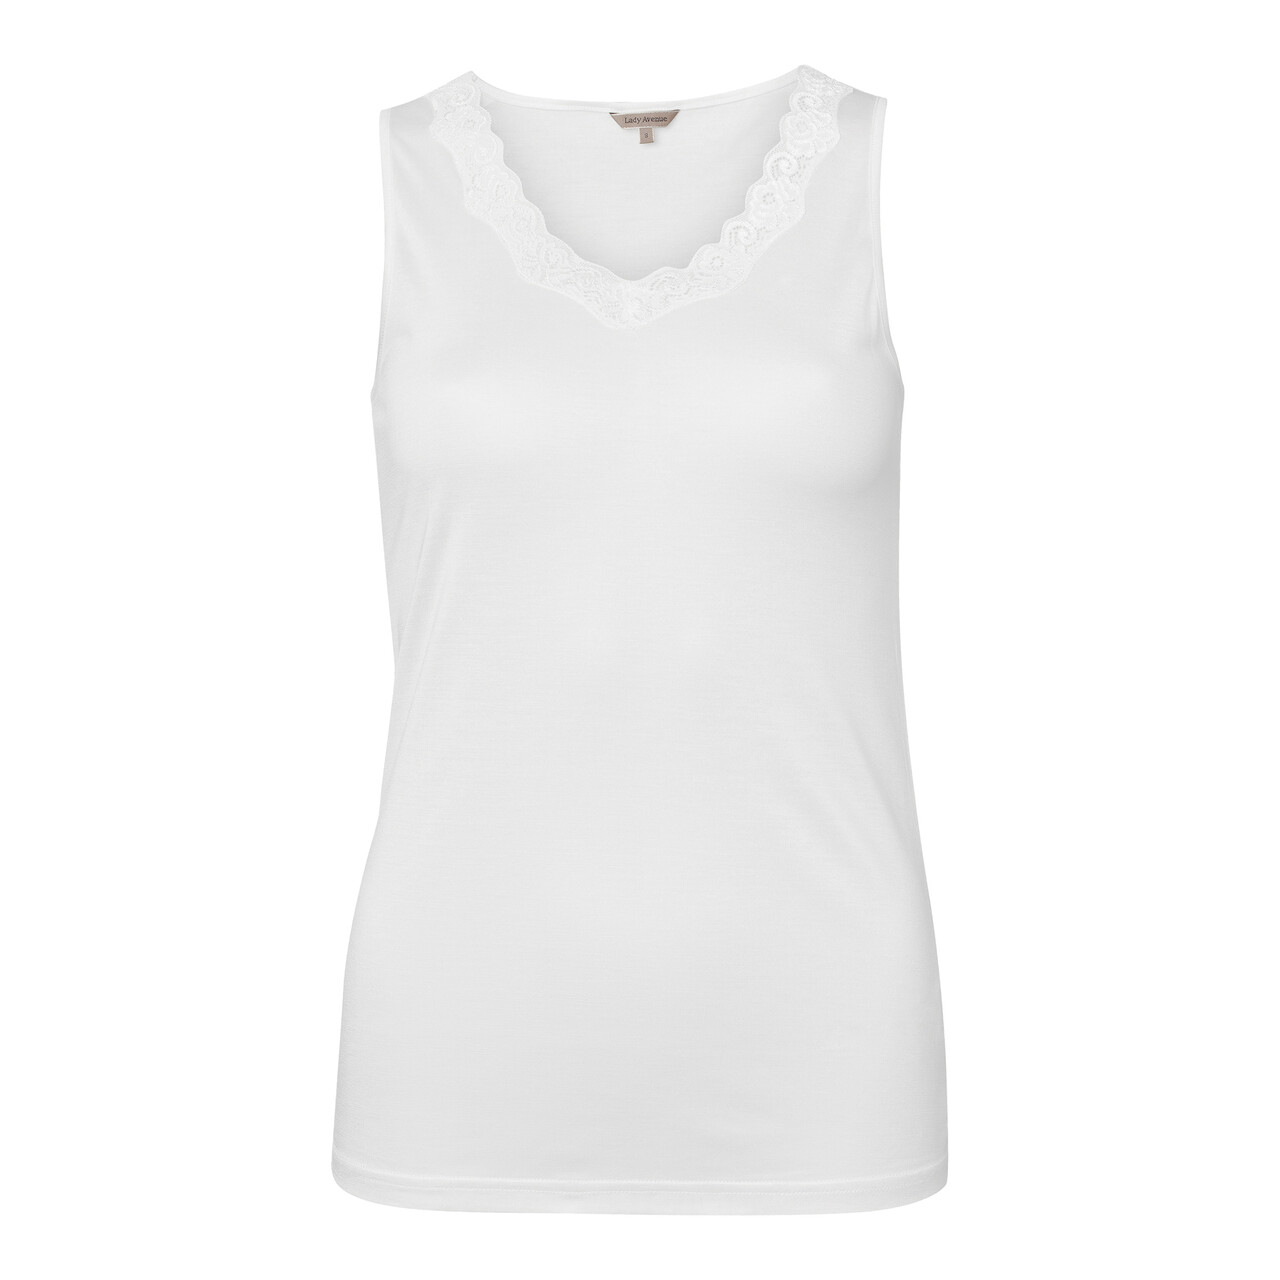 Se Lady Avenue Silk Jersey Top, Farve: Hvid, Størrelse: M, Dame hos Netlingeri.dk